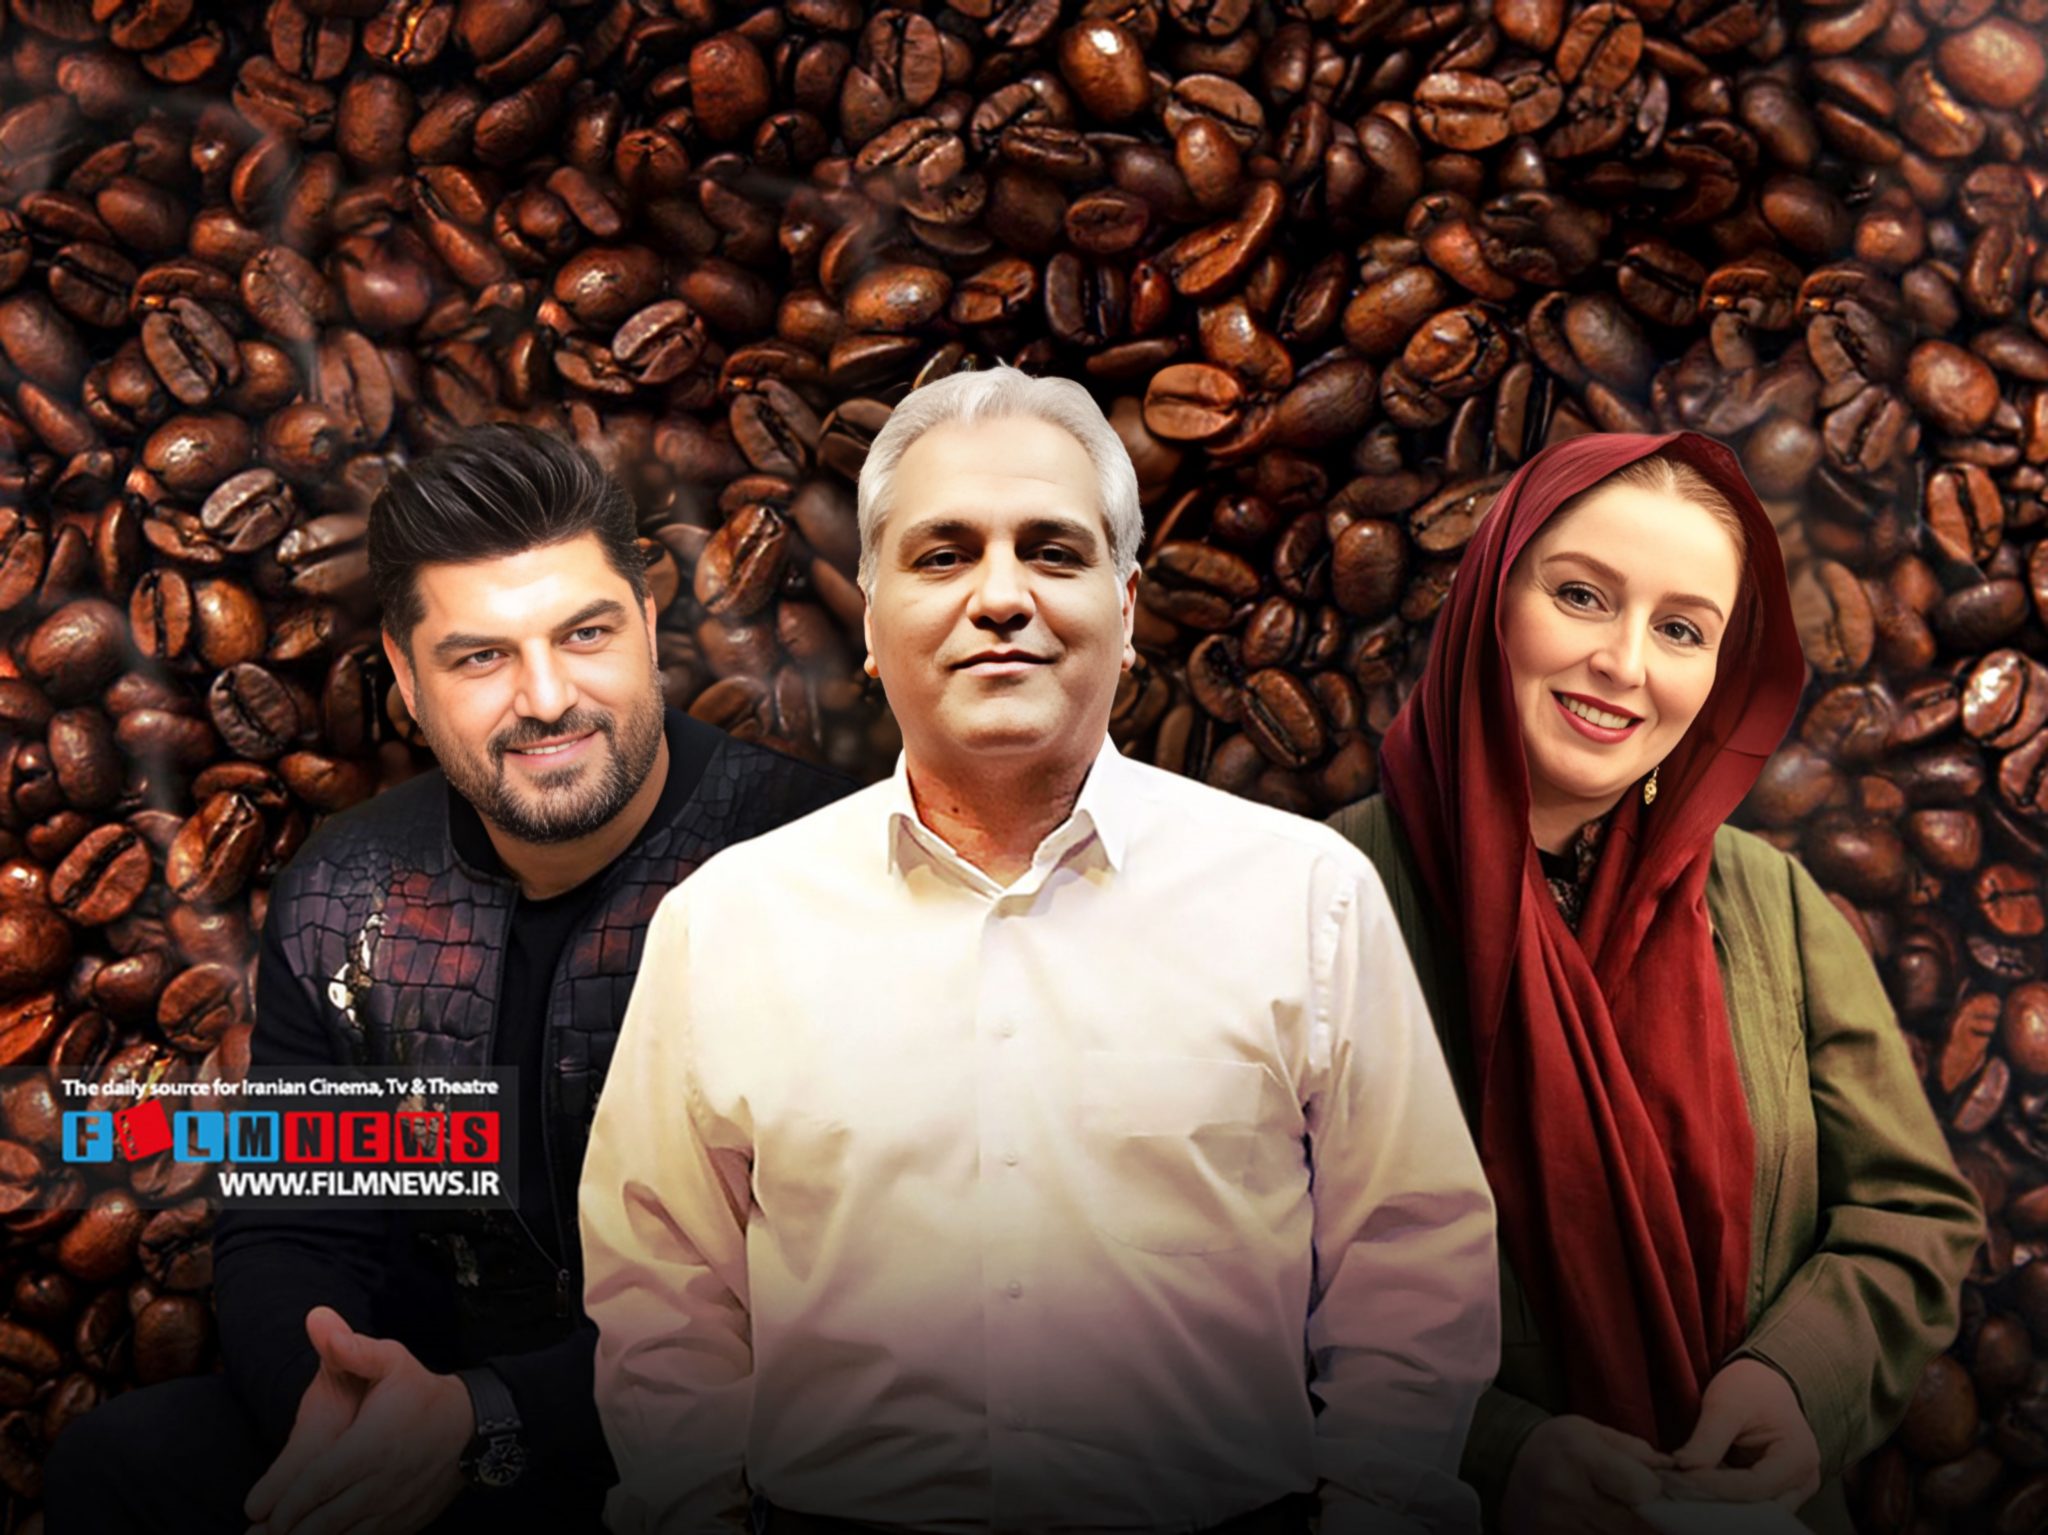 ساخت سریال جدید مهران مدیری در شبکه خانگی رسما اعلام شد مدیری «قهوه پدر» را به سبک هیولا با سام درخشانی و ژاله صامتی می سازد.